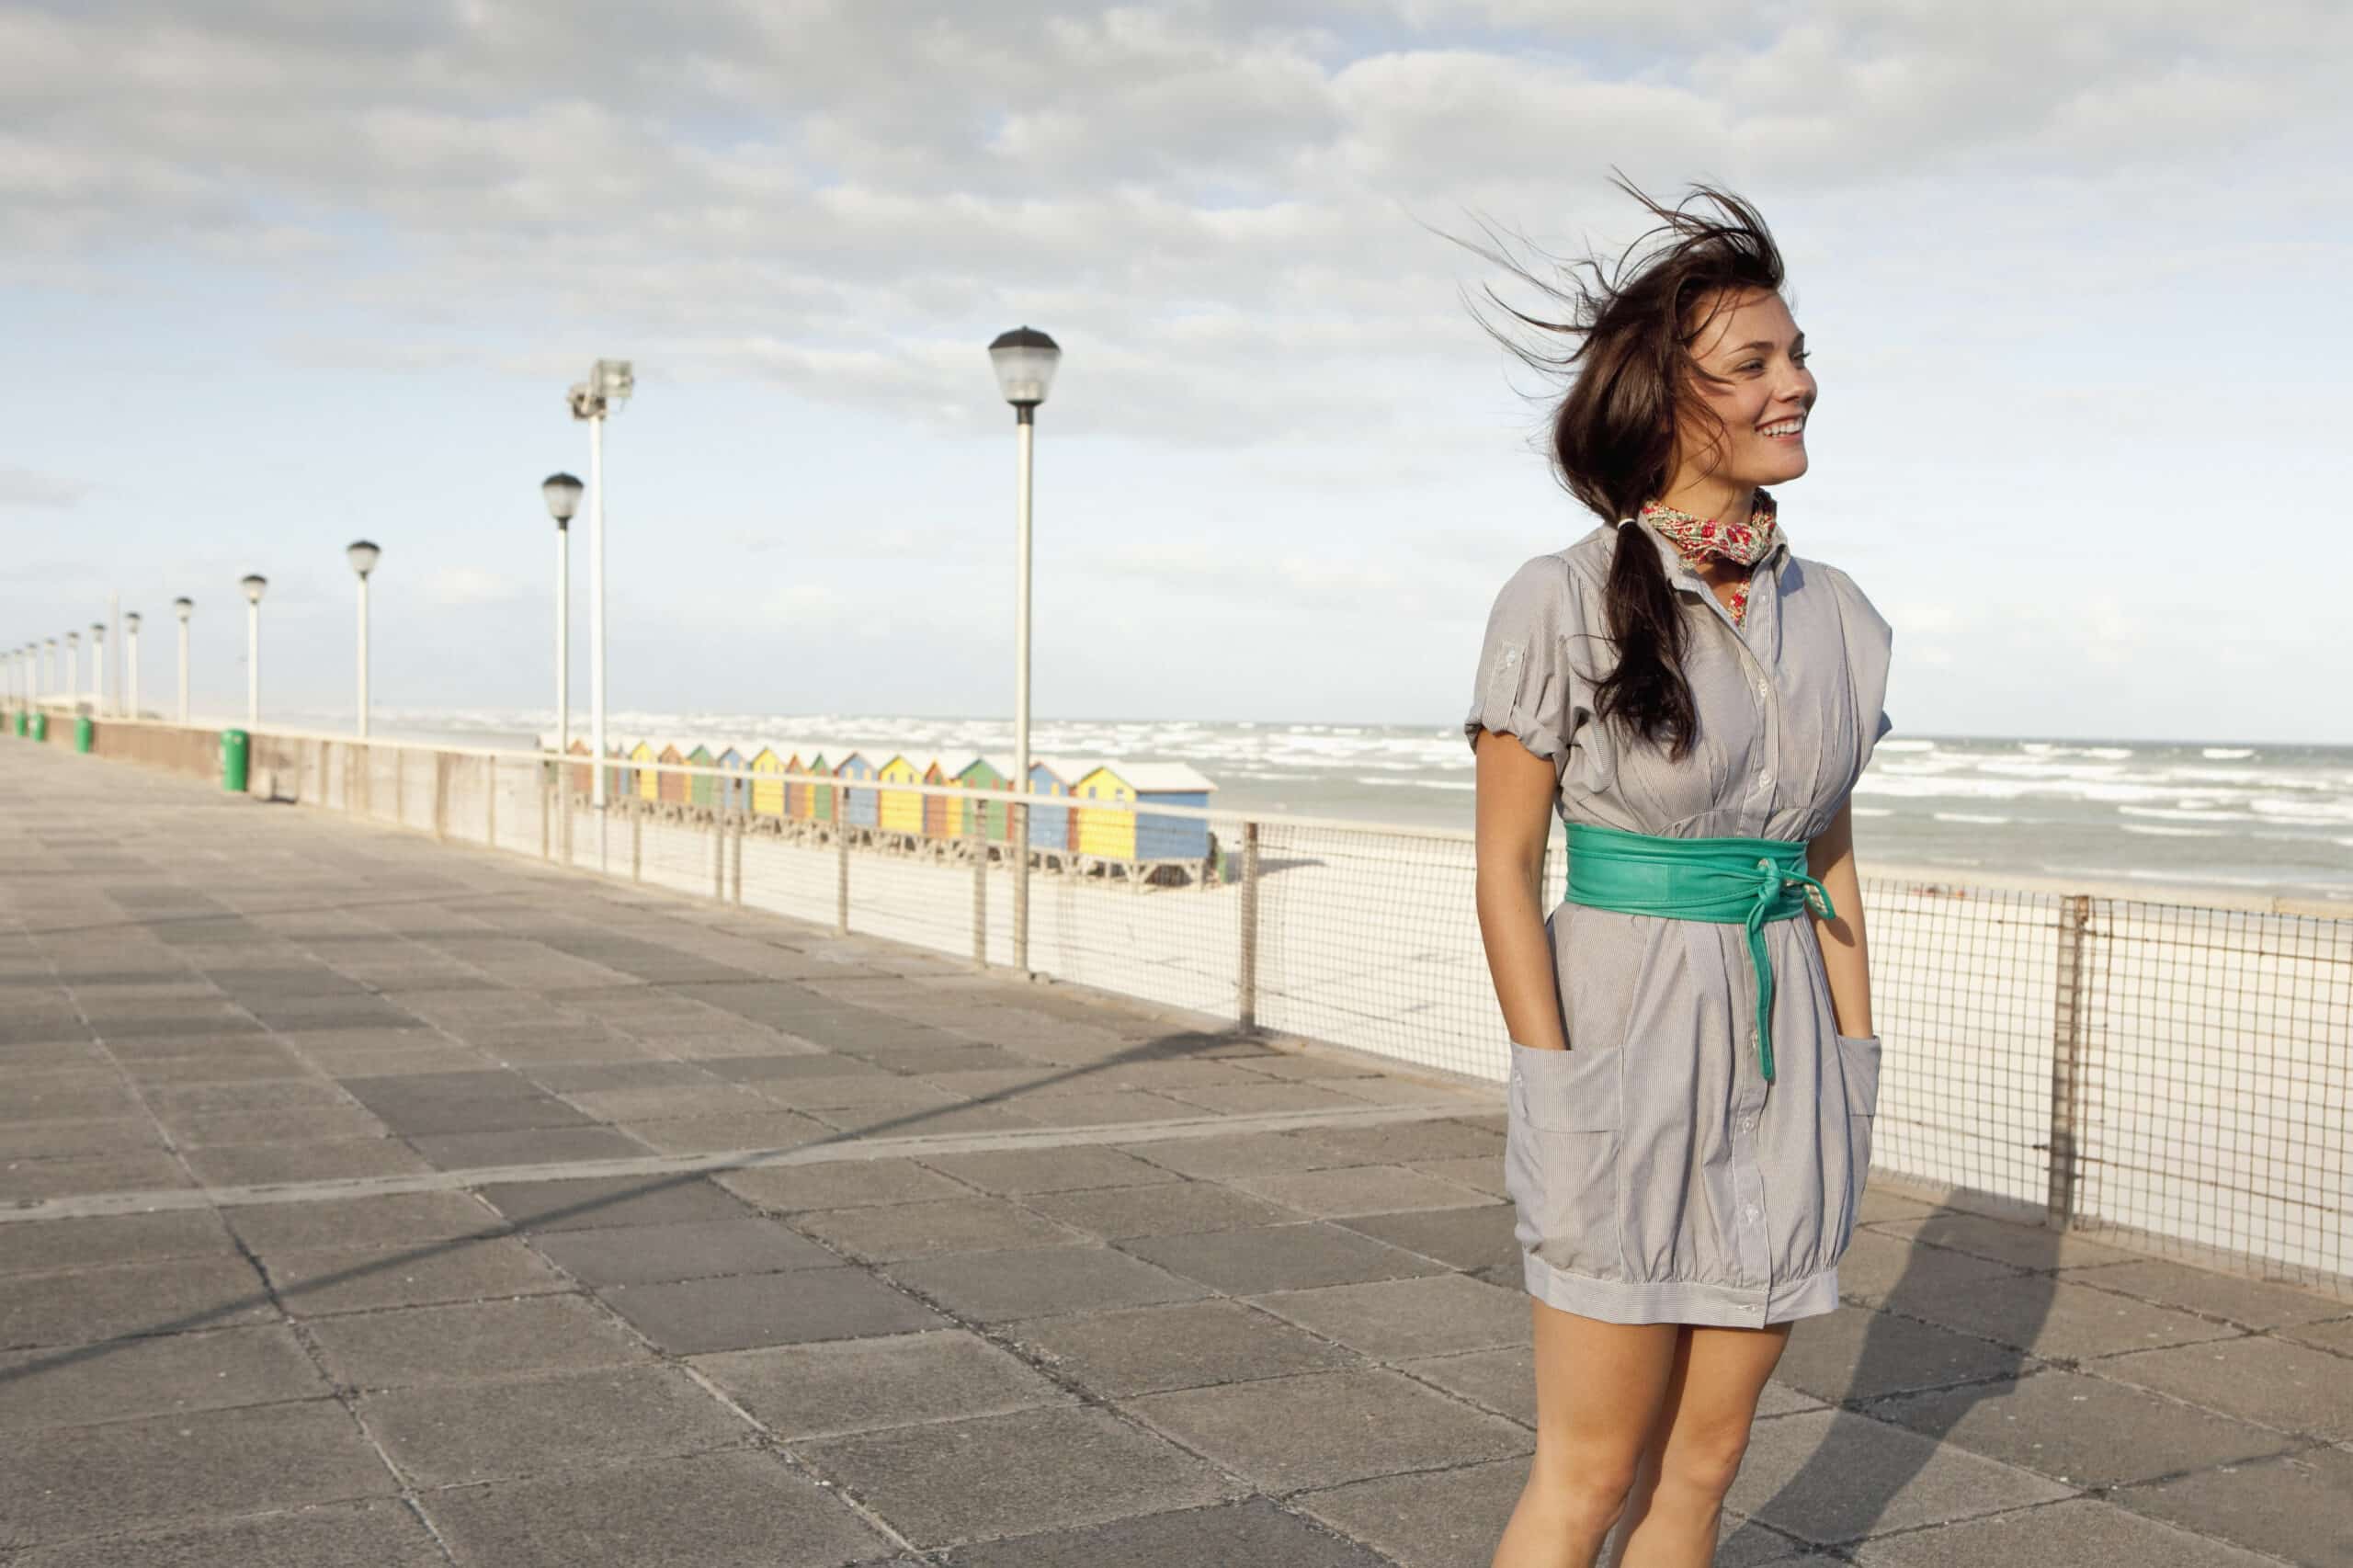 Eine fröhliche Frau steht auf einer windigen Strandpromenade, ihr Haar weht im Wind. Sie trägt ein graues Kleid mit einem grünen Gürtel und lächelt breit vor dem Hintergrund eines bewölkten Himmels und Meereswellen. © Fotografie Tomas Rodriguez